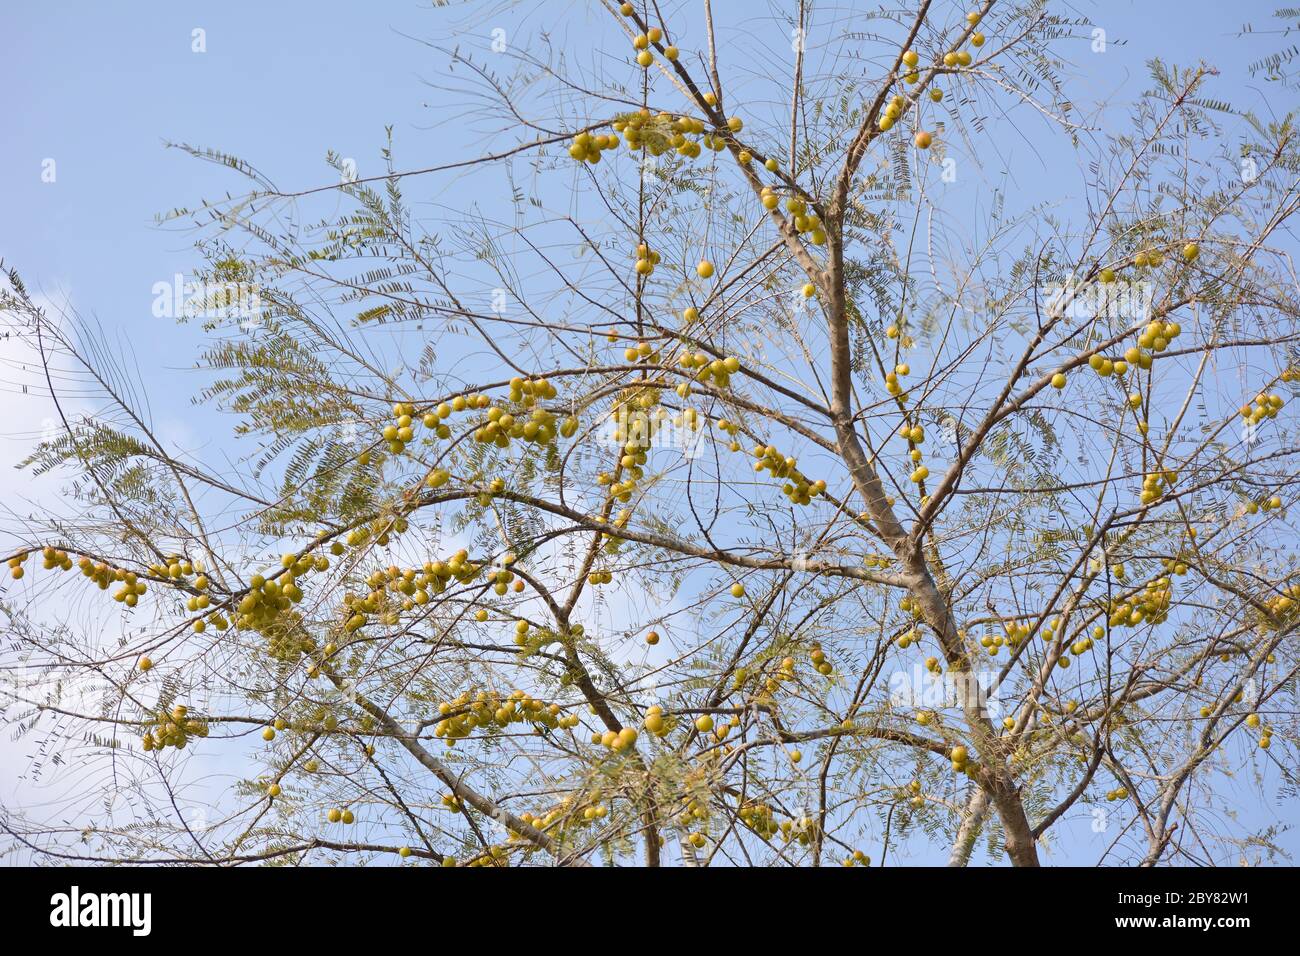 Arándanos indios o fruta amla colgando en el árbol. La arándano indio es un ingrediente esencial de los medicamentos ayurvédicos tradicionales de la India. Foto de stock